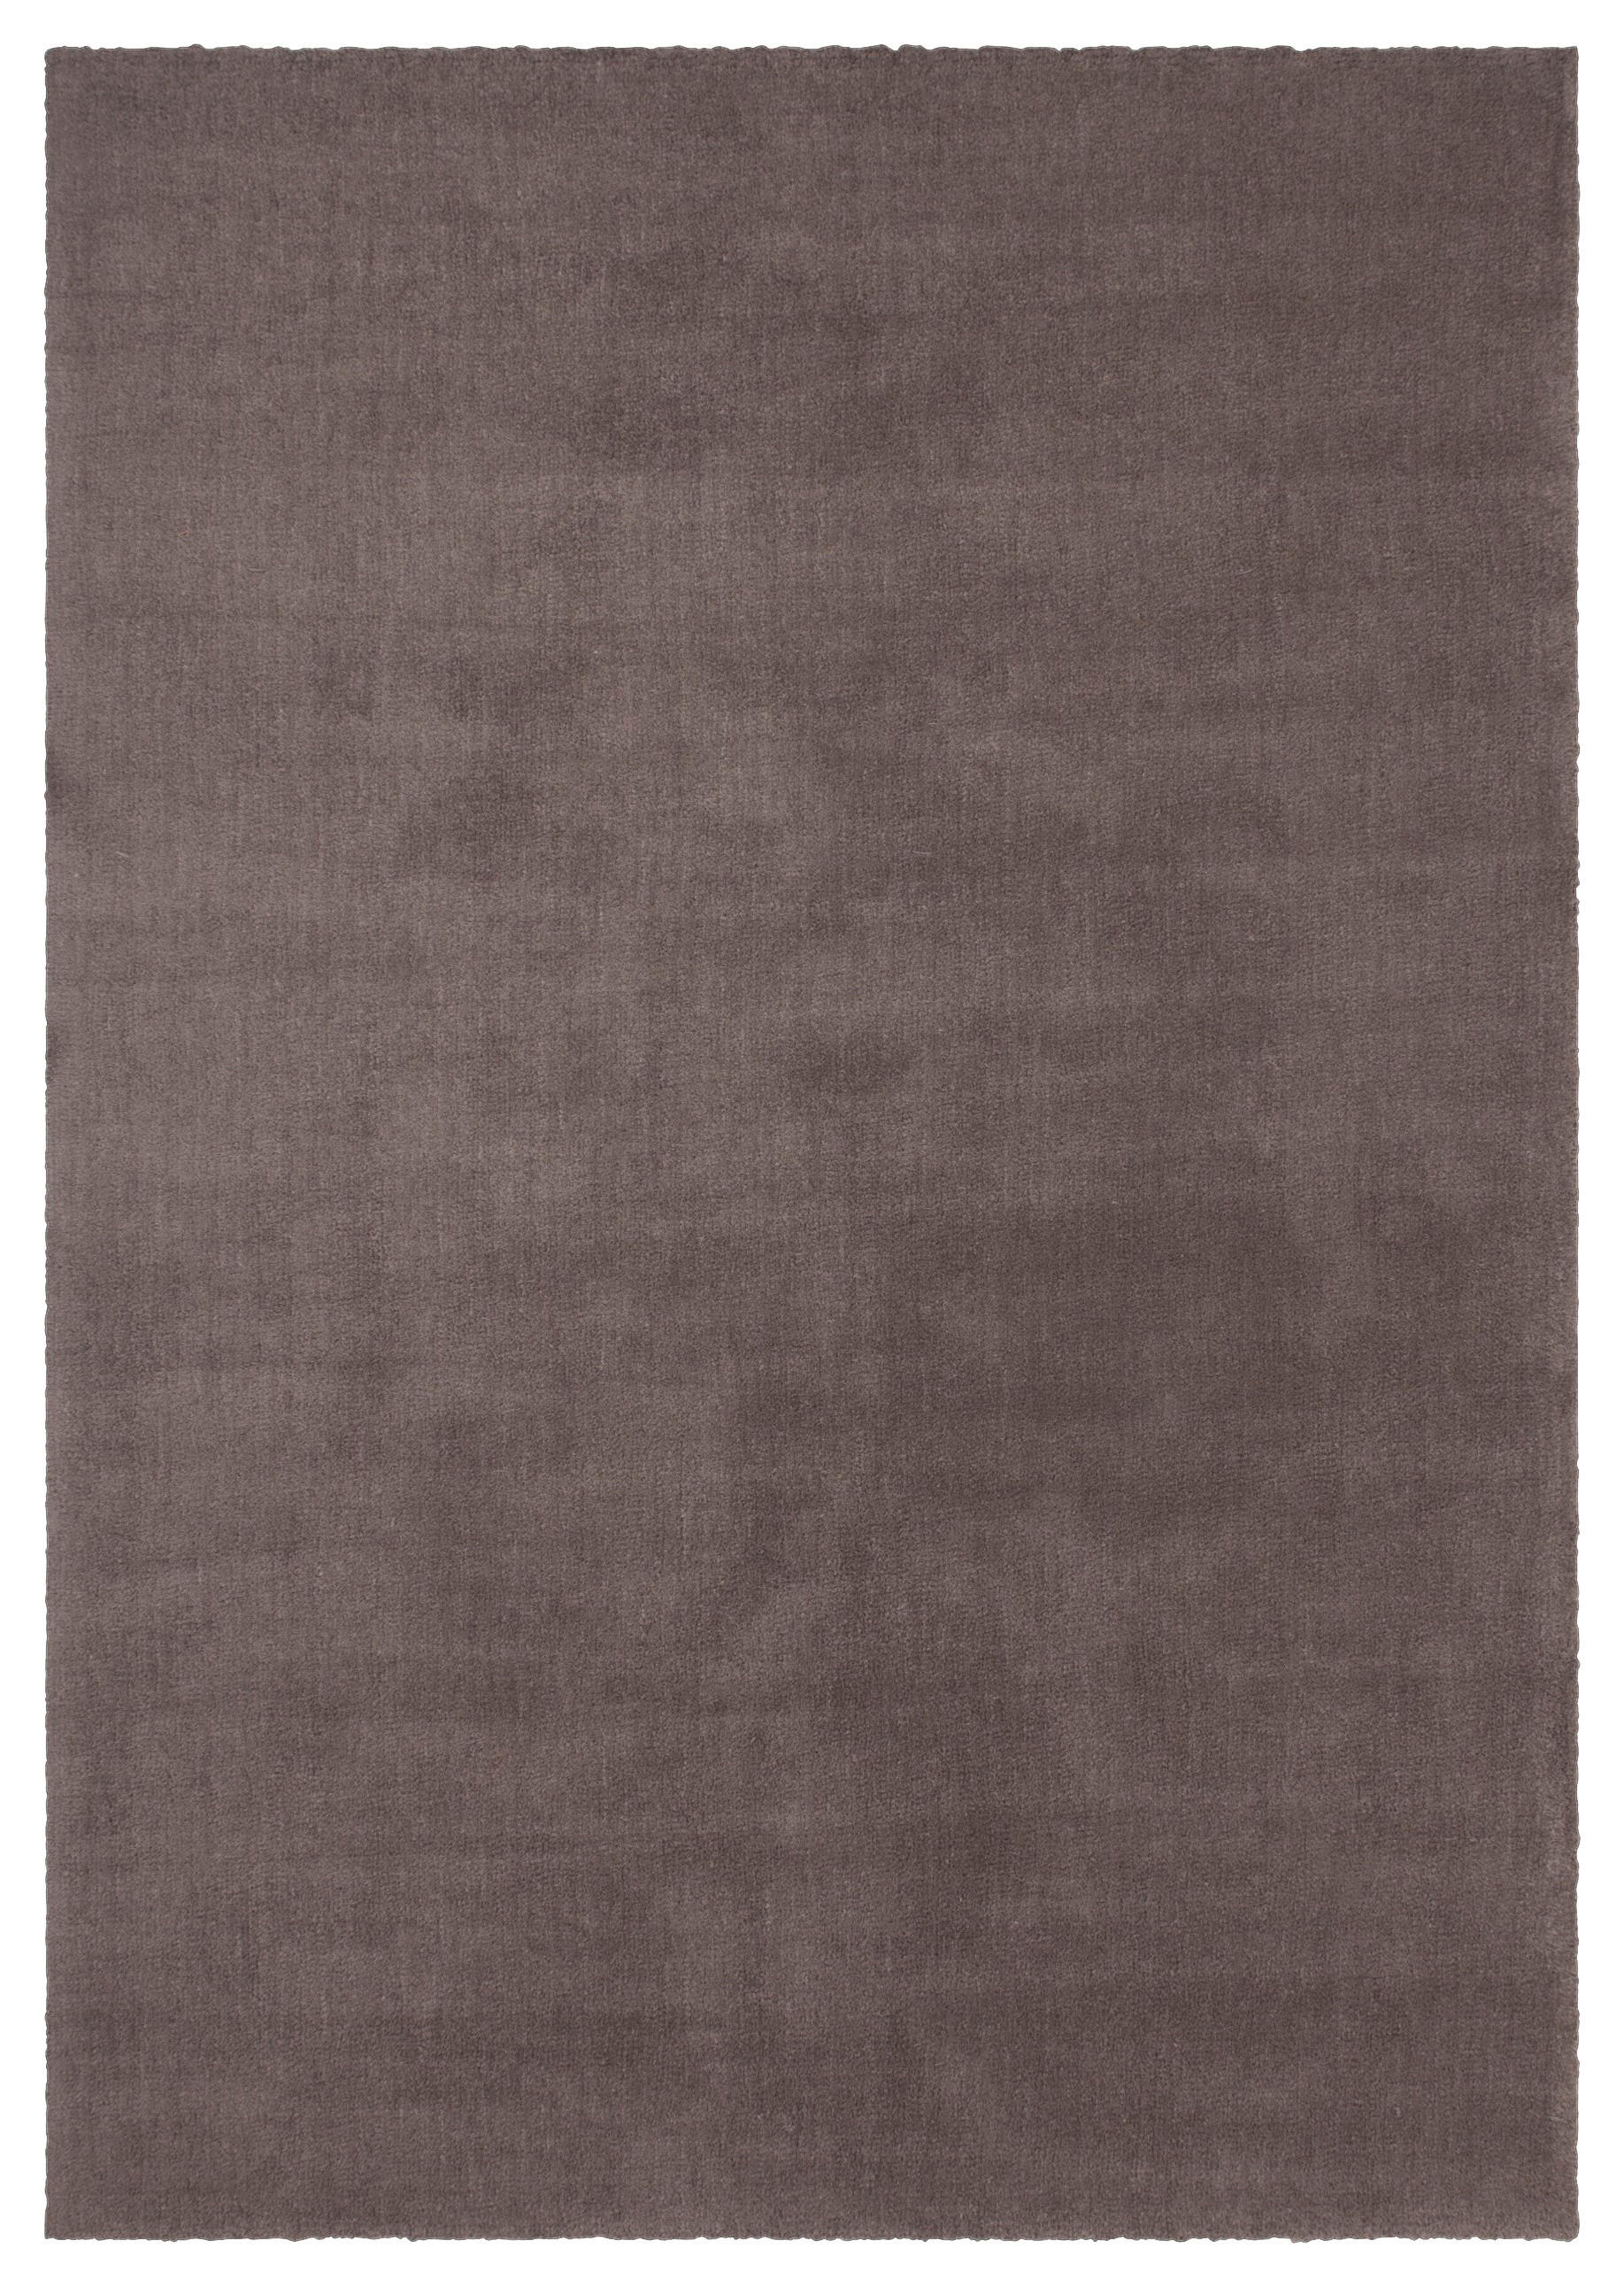 KOBEREC S VYSOKÝM VLASEM, 160/230 cm, hnědavě šedá - hnědavě šedá - textil